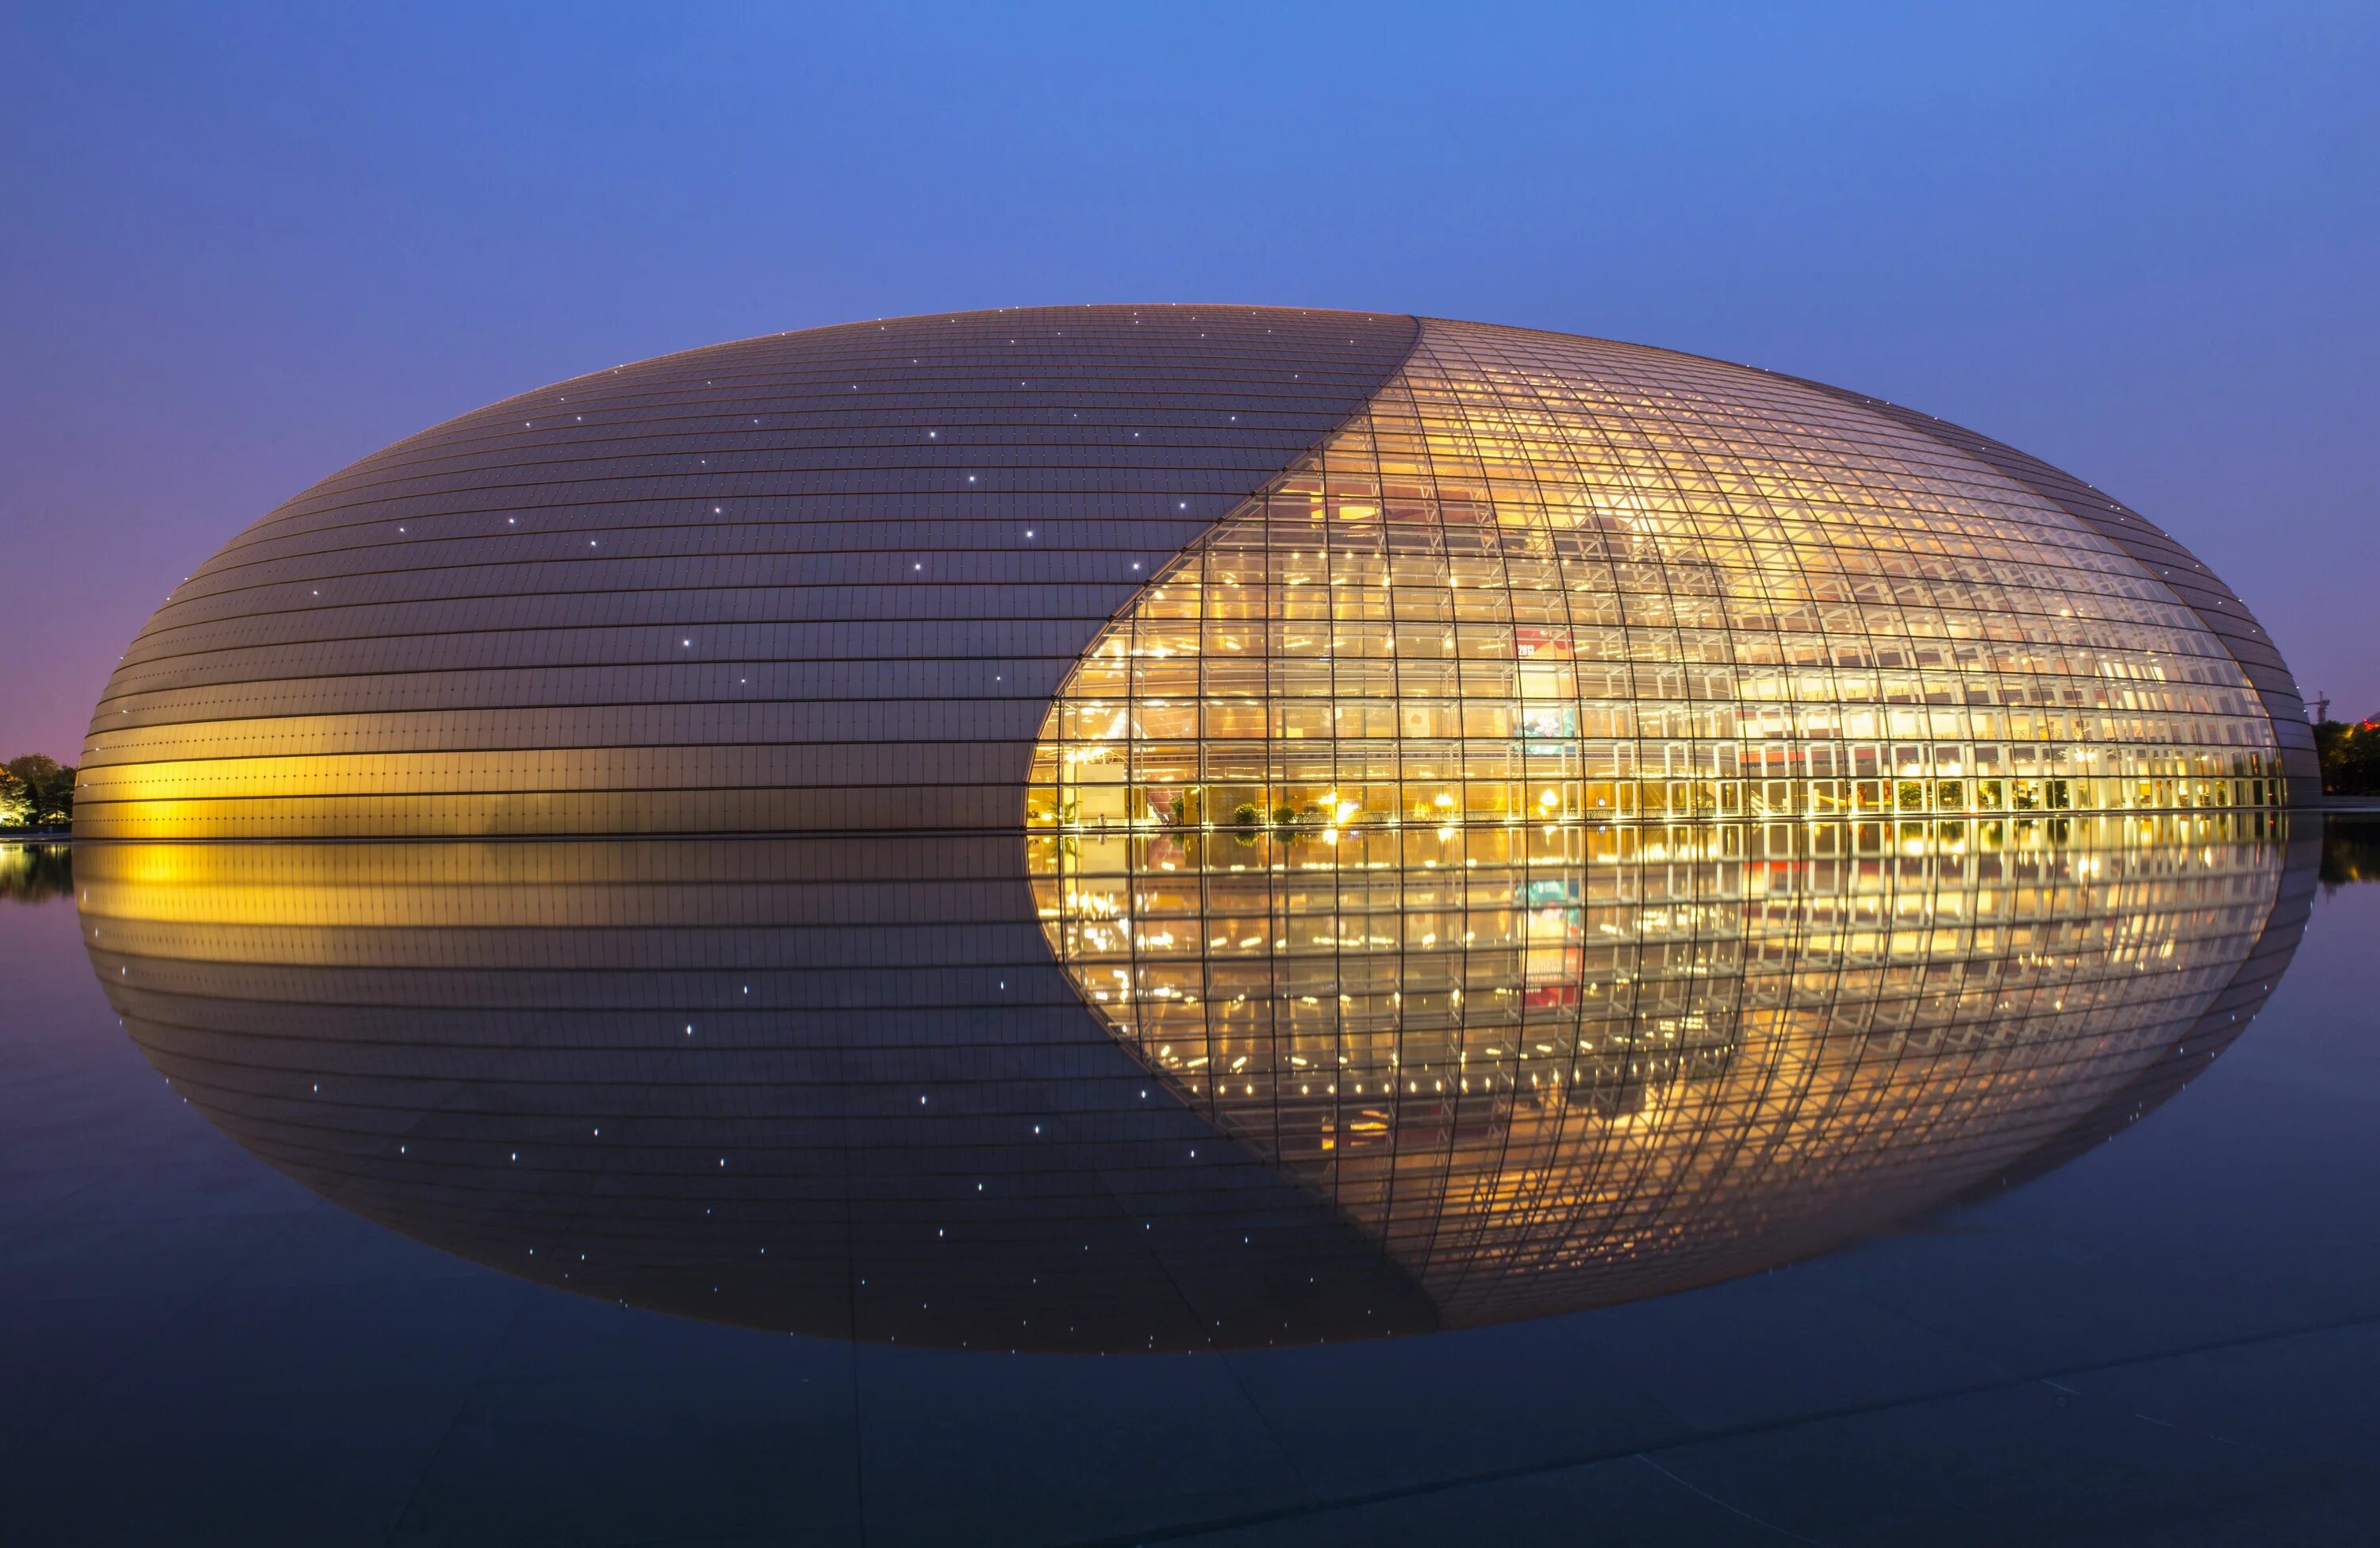 Всемирно известные здания. Национальный центр исполнительских искусств в Пекине. Оперный театр в Пекине Поль Андре. Оперный театр Пекин Китай. Национальный театр исполнительских искусств. Пекин, Китай.